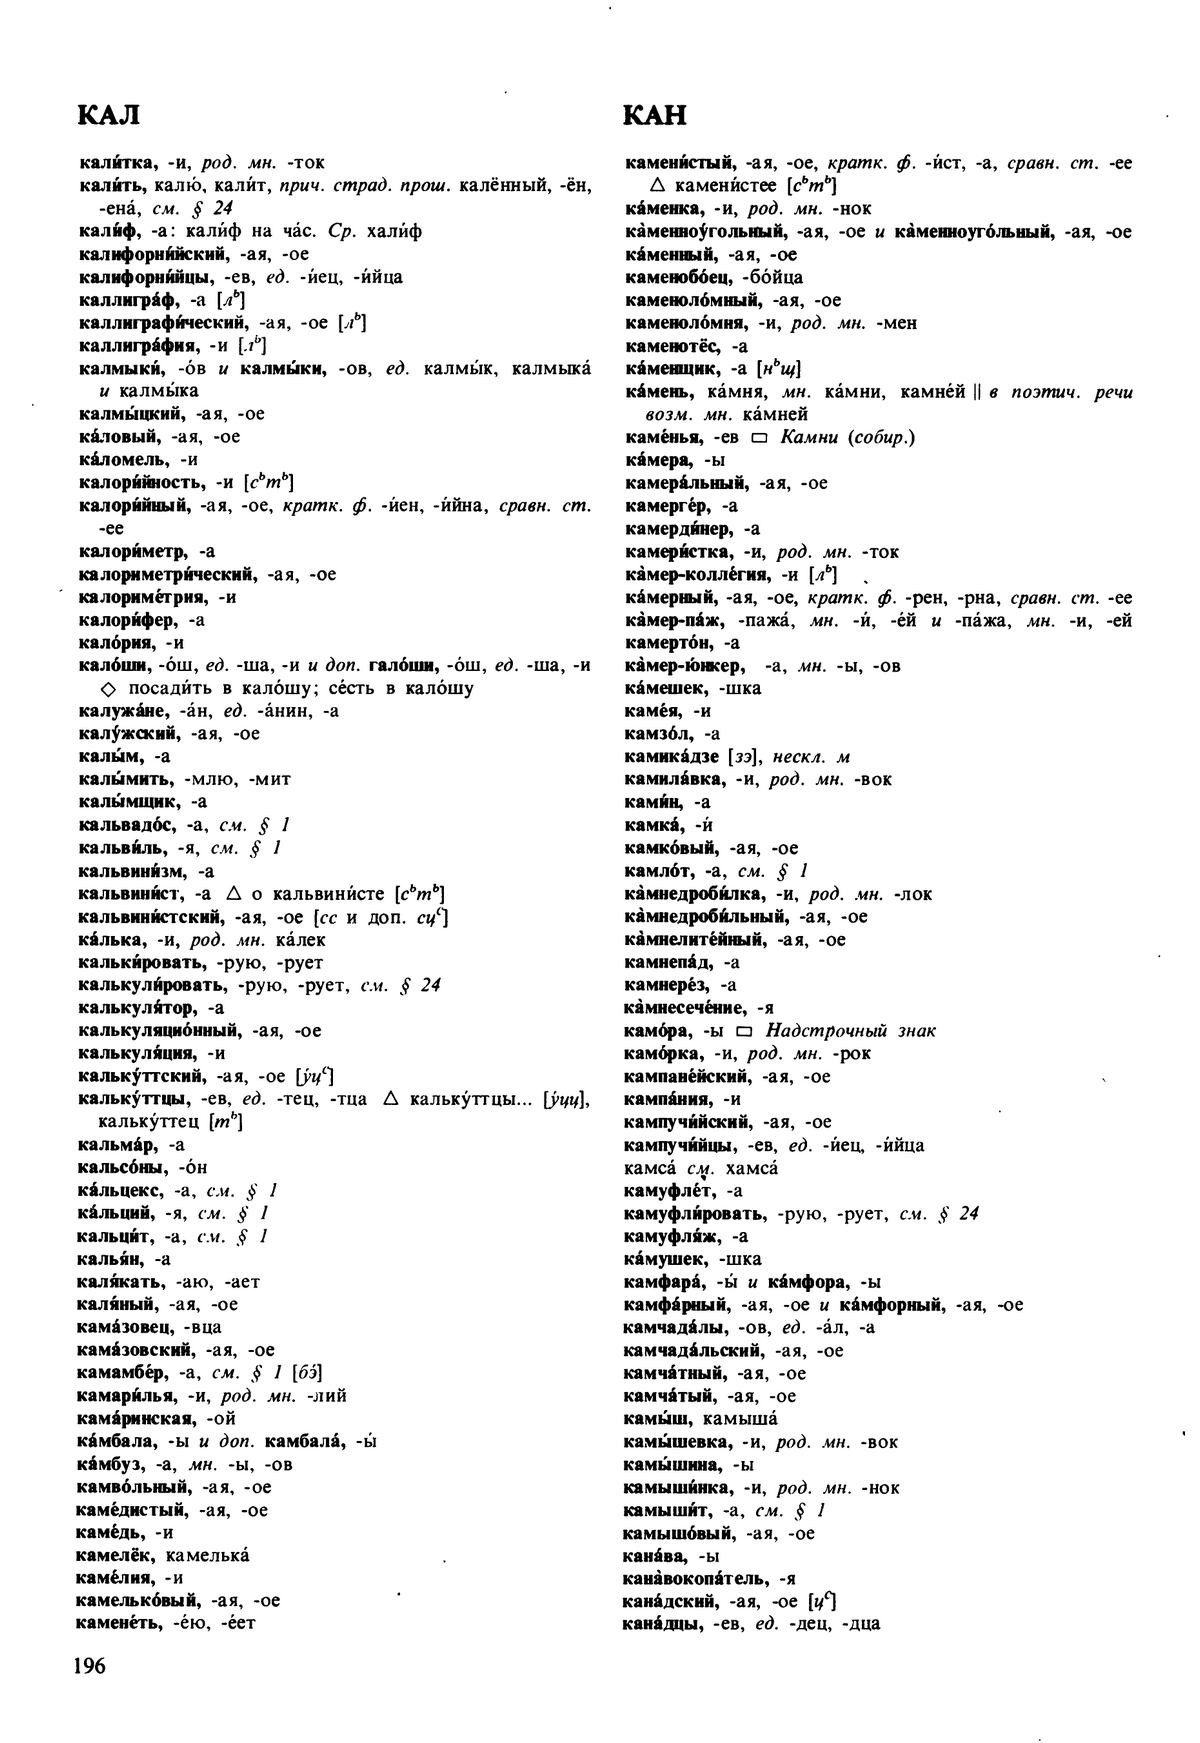 Фотокопия pdf / скан страницы 196 орфоэпического словаря под редакцией Аванесова (5 издание, 1989 год)